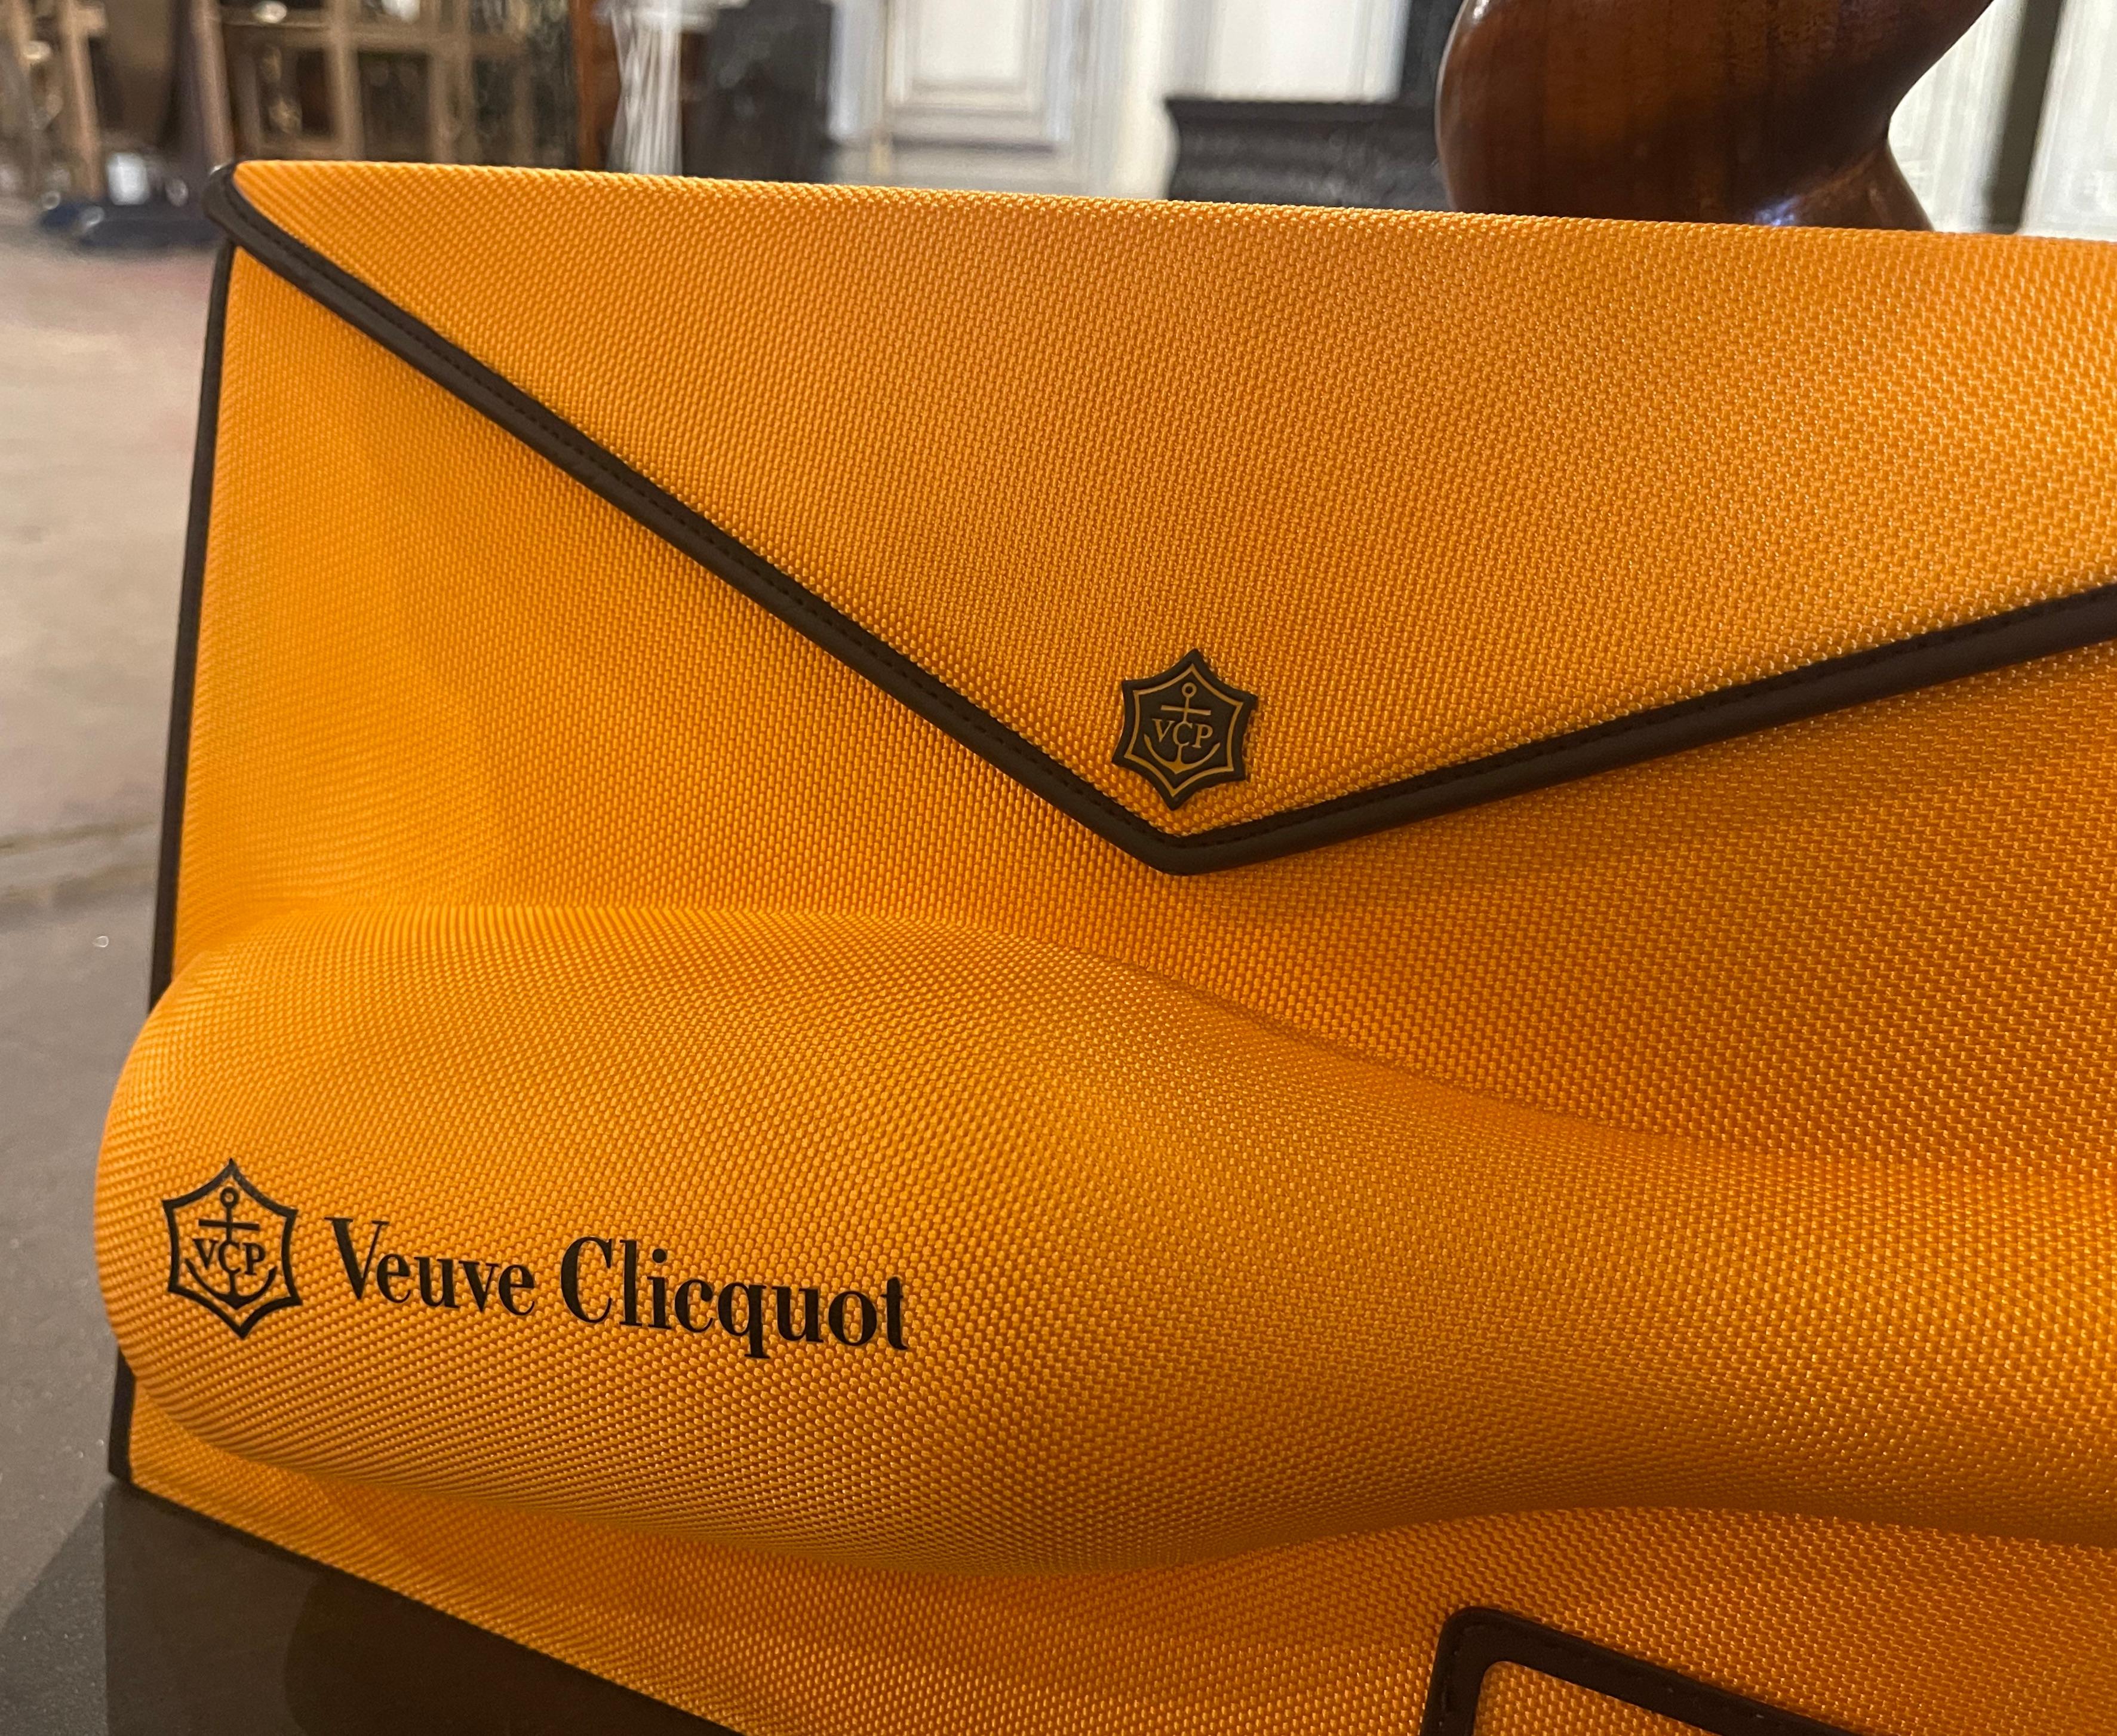 L'envoûtante pochette Clicquot est une réinterprétation exquise du sac à main enveloppe classique. Ce porte-bagages jaune resplendissant a été fabriqué en France vers 2010, et est orné d'un élégant passepoil en cuir marron, qui respire la